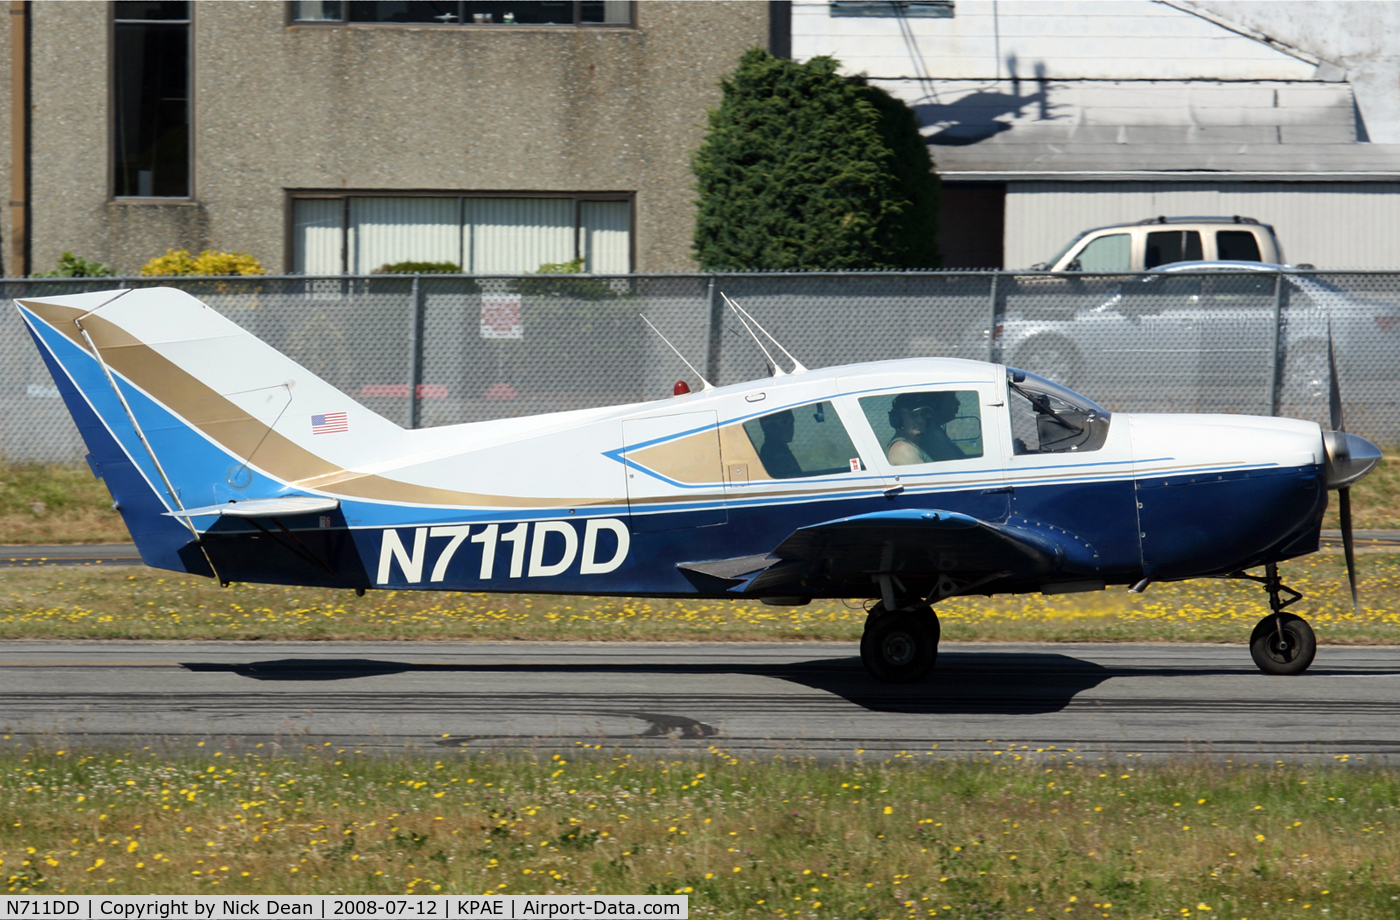 N711DD, 1967 Bellanca 17-30 C/N 30027, South end short runway